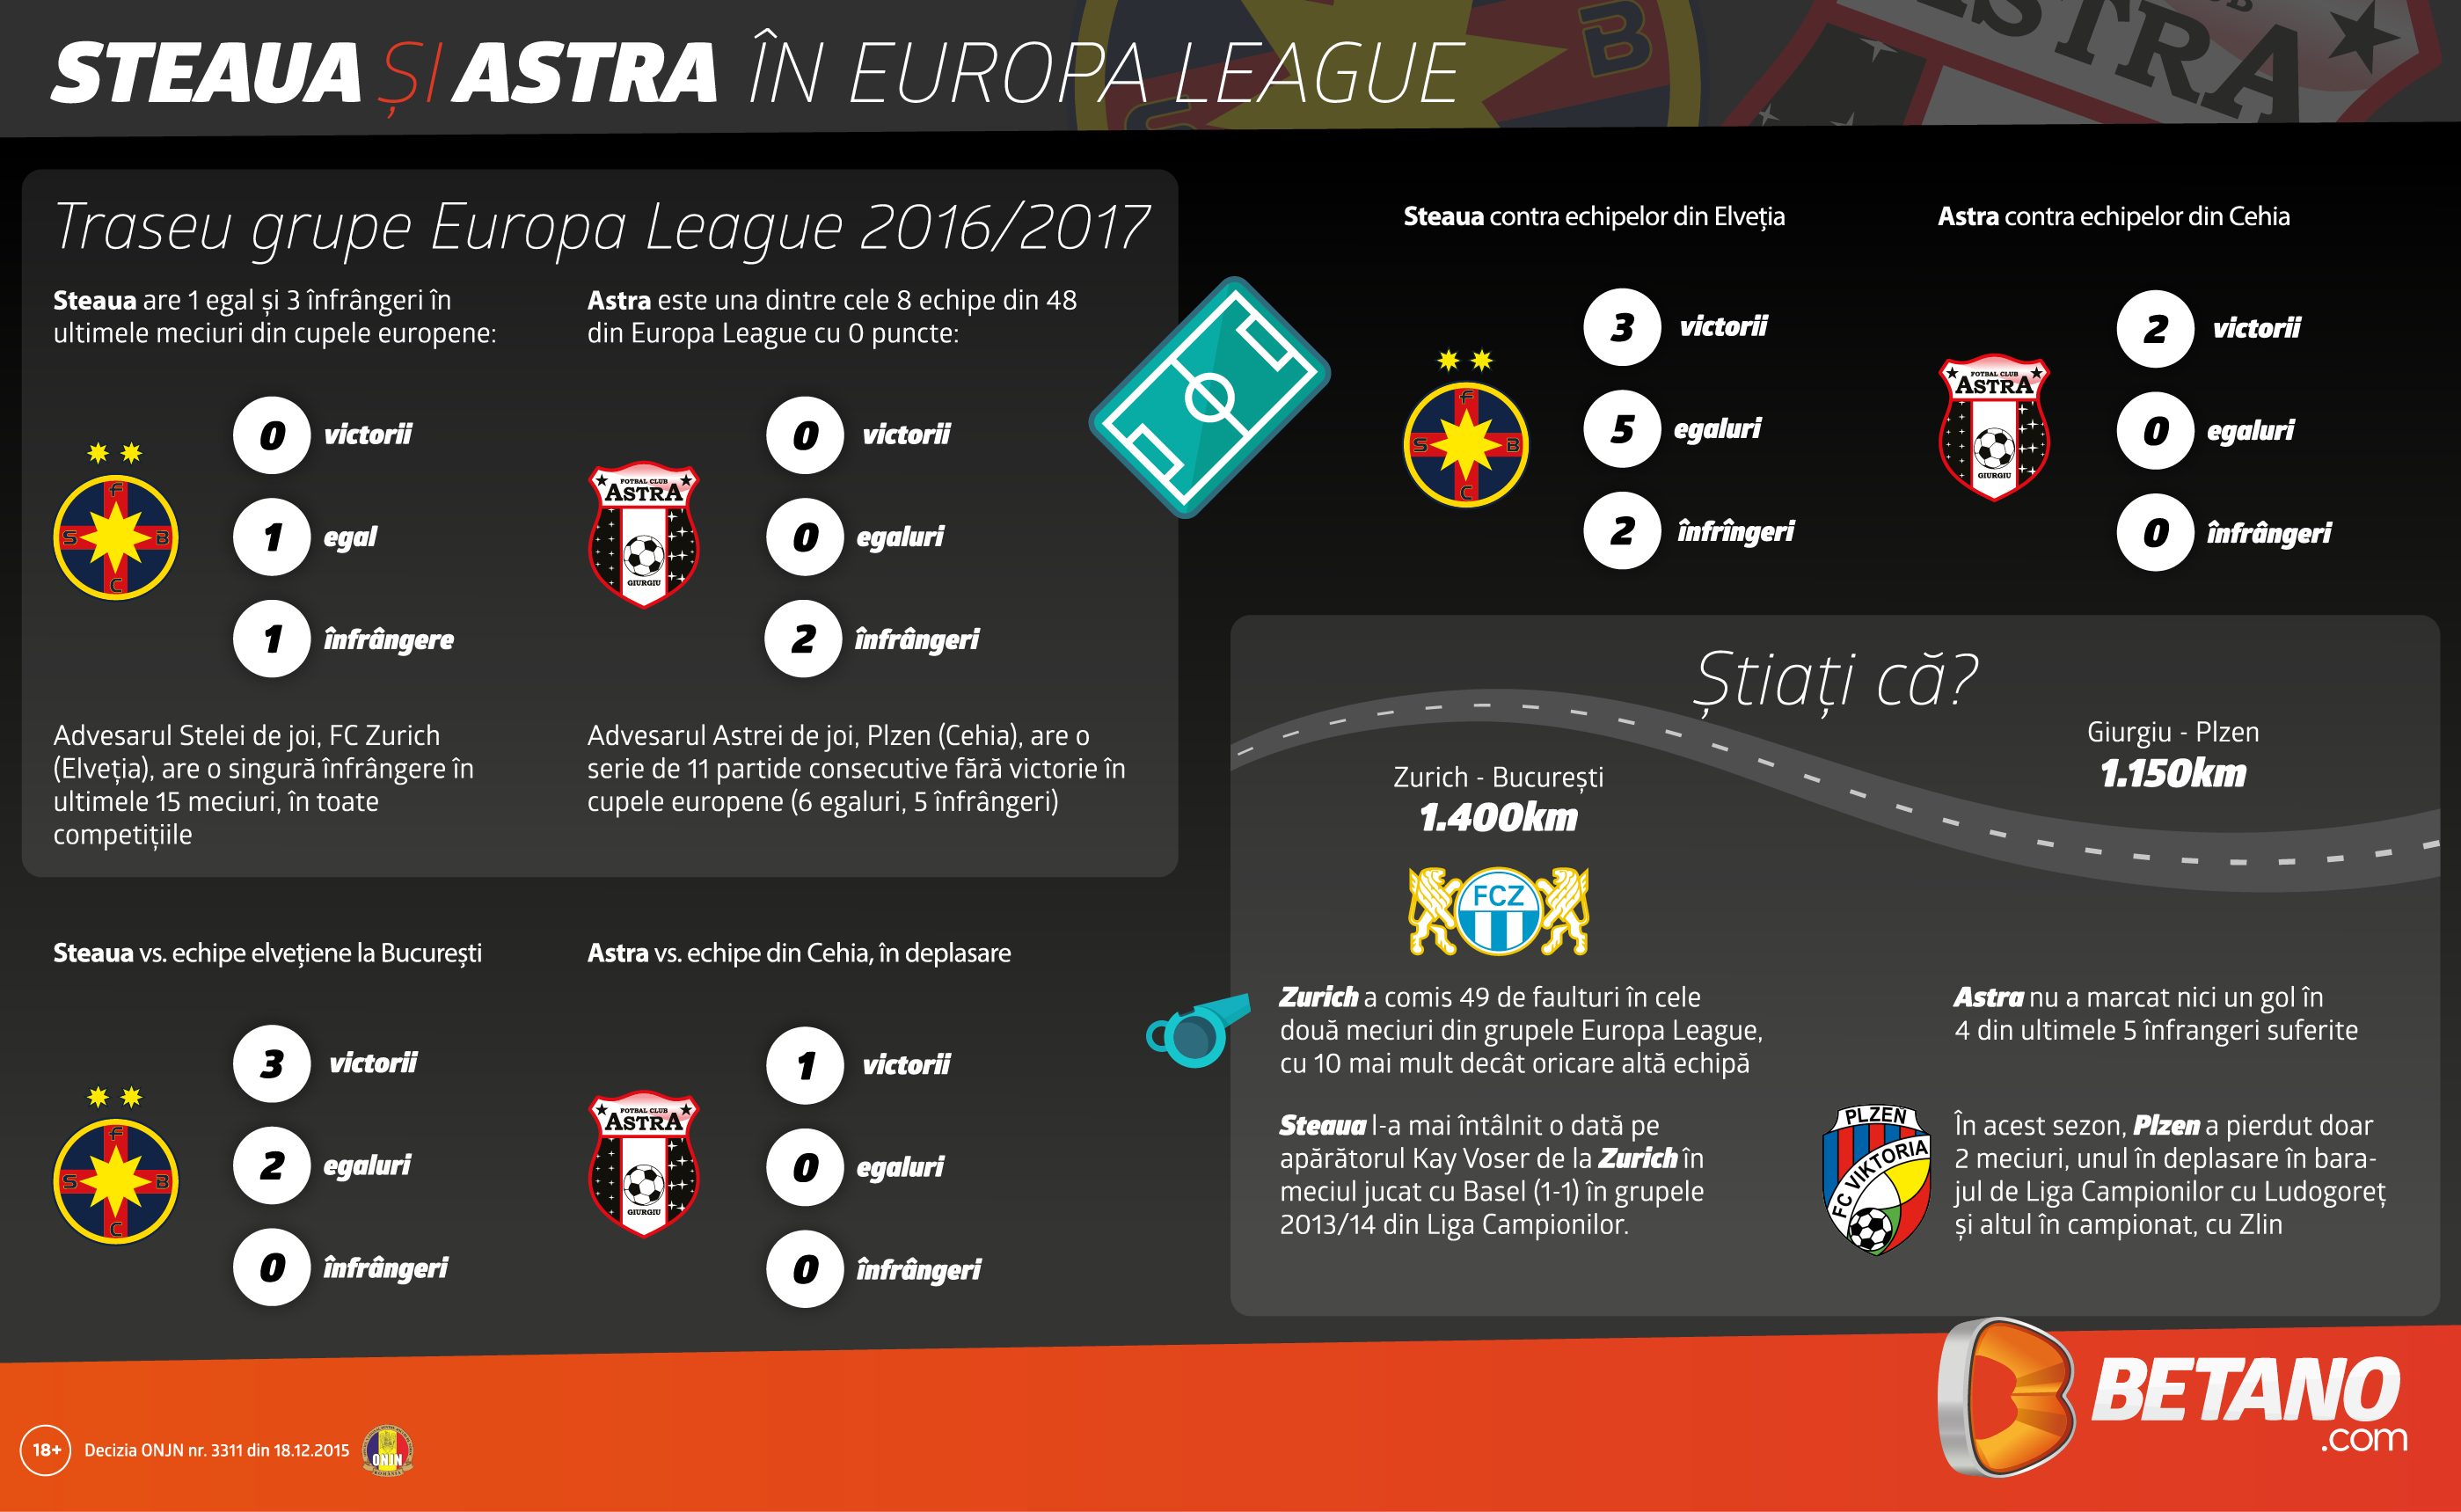 sgteaua astra grafic europa league